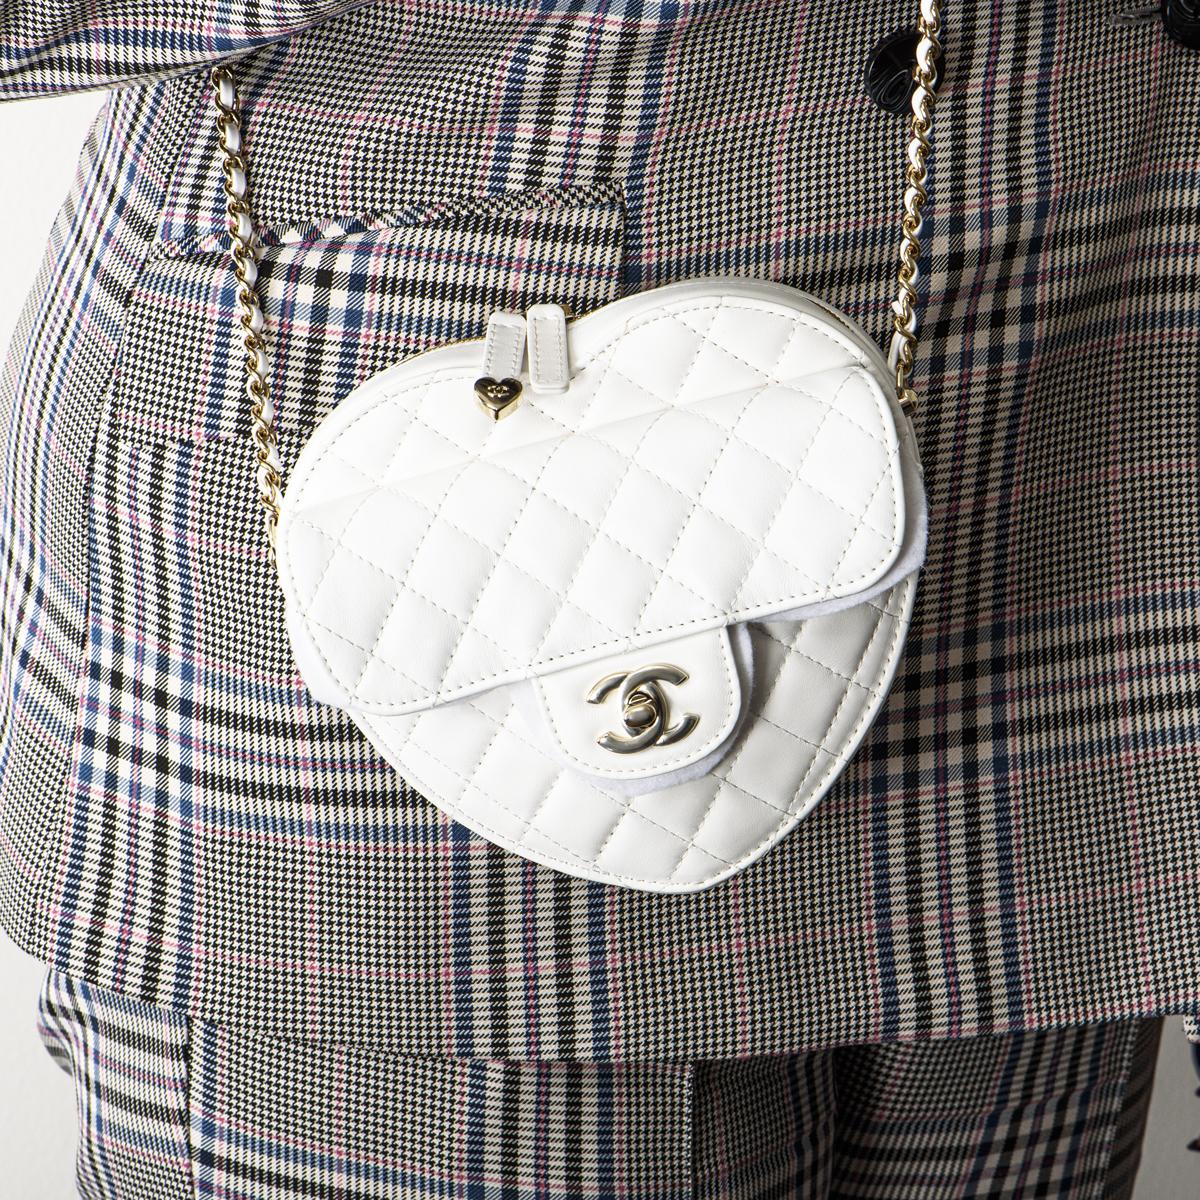 New Chanel White Heart Bag 4